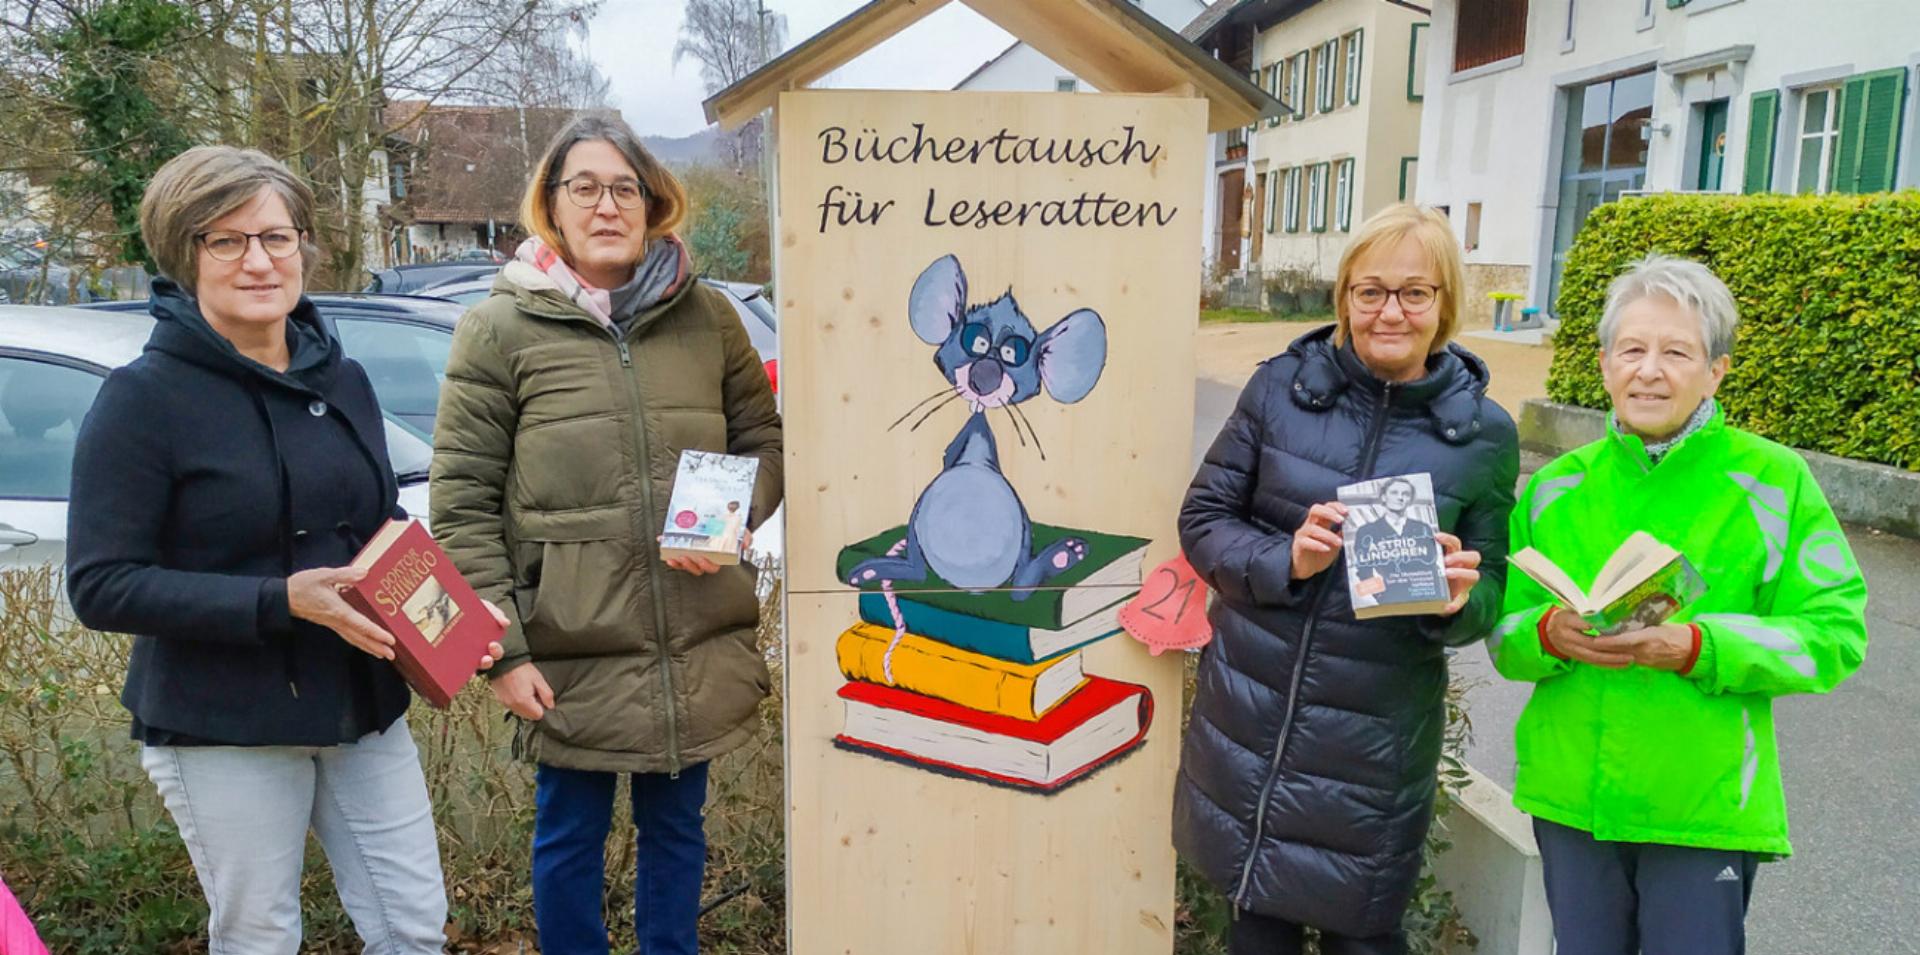 Der Frauenverein – mit Susanne Marti, Luana Sama, Brita Morgenroth und Ursula Born (von links) – bietet öffentlich den Tausch von Büchern an. Bilder Sander van Riemsdijk